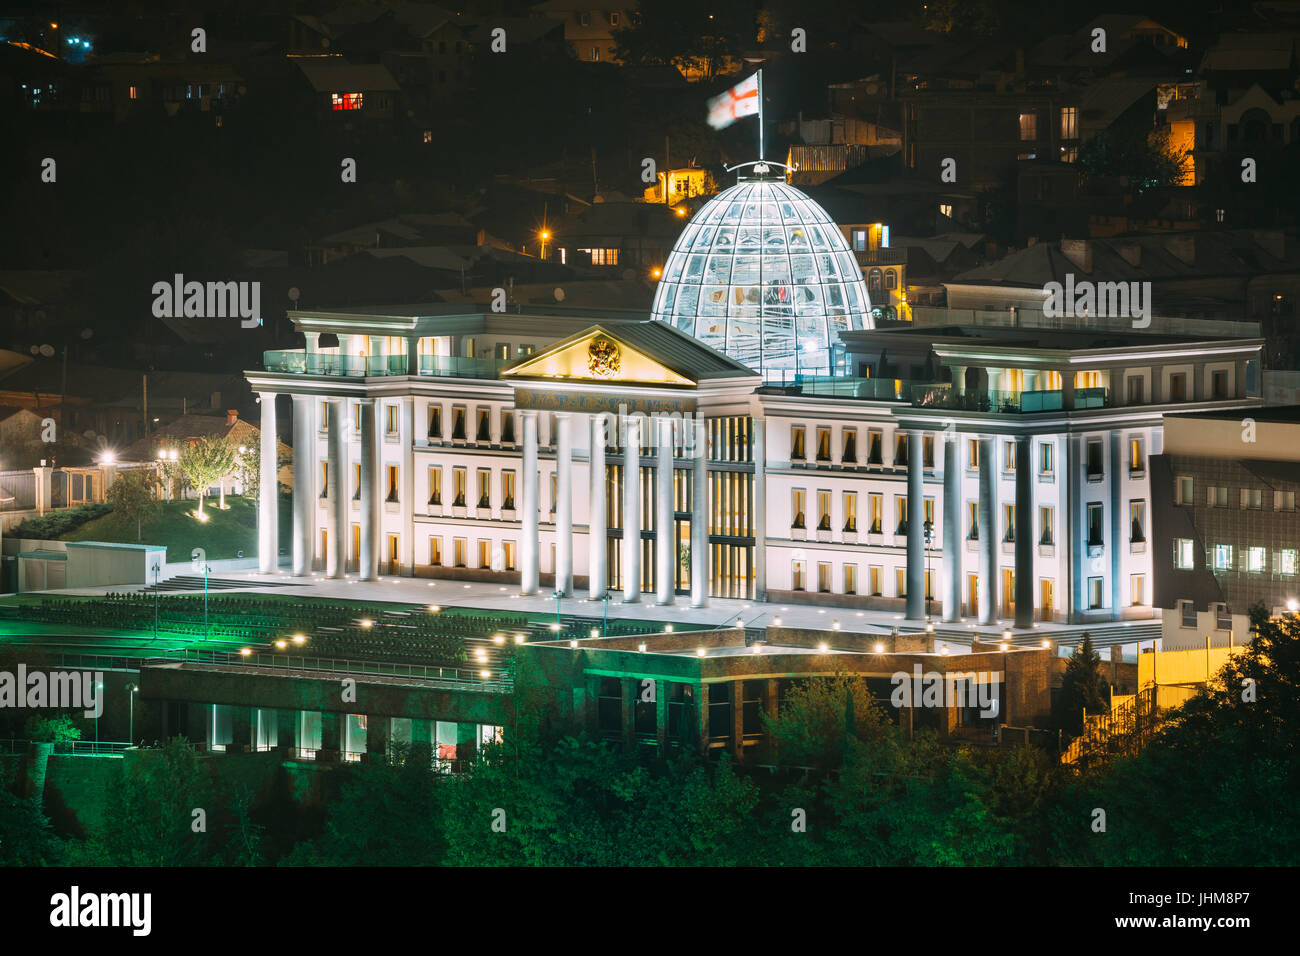 Tbilisi, Georgia. Amministrazione presidenziale Palace, Avlabari Residence In illuminazione notturna, Uptown di Avlabari distretto. Famoso punto di riferimento Foto Stock